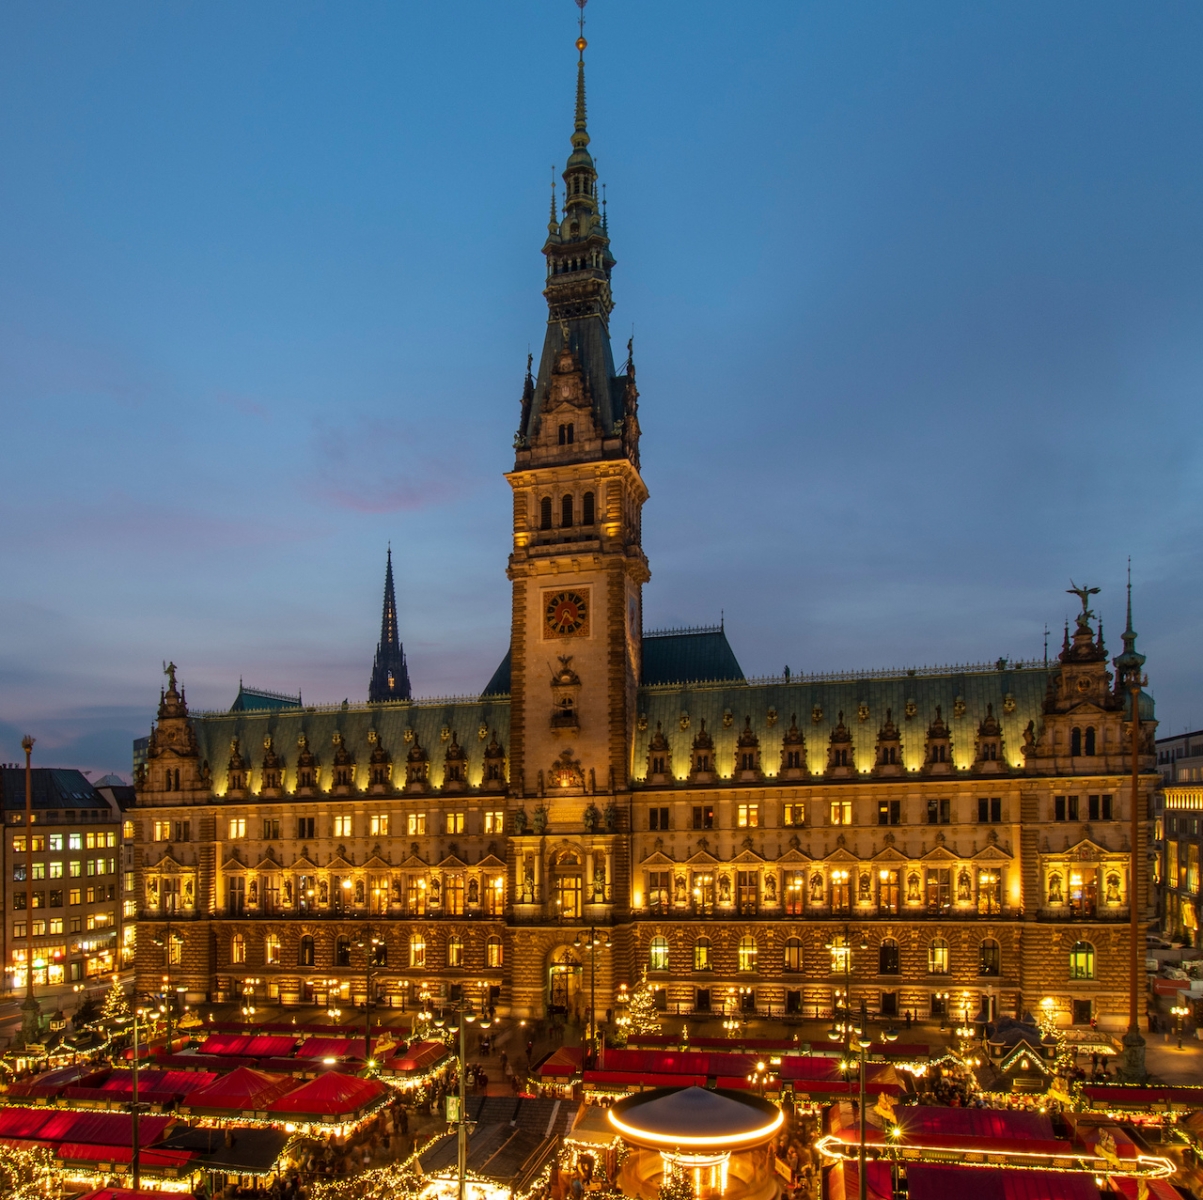 Hamburgo en Navidad - Mercado navideño en el mercado del ayuntamiento